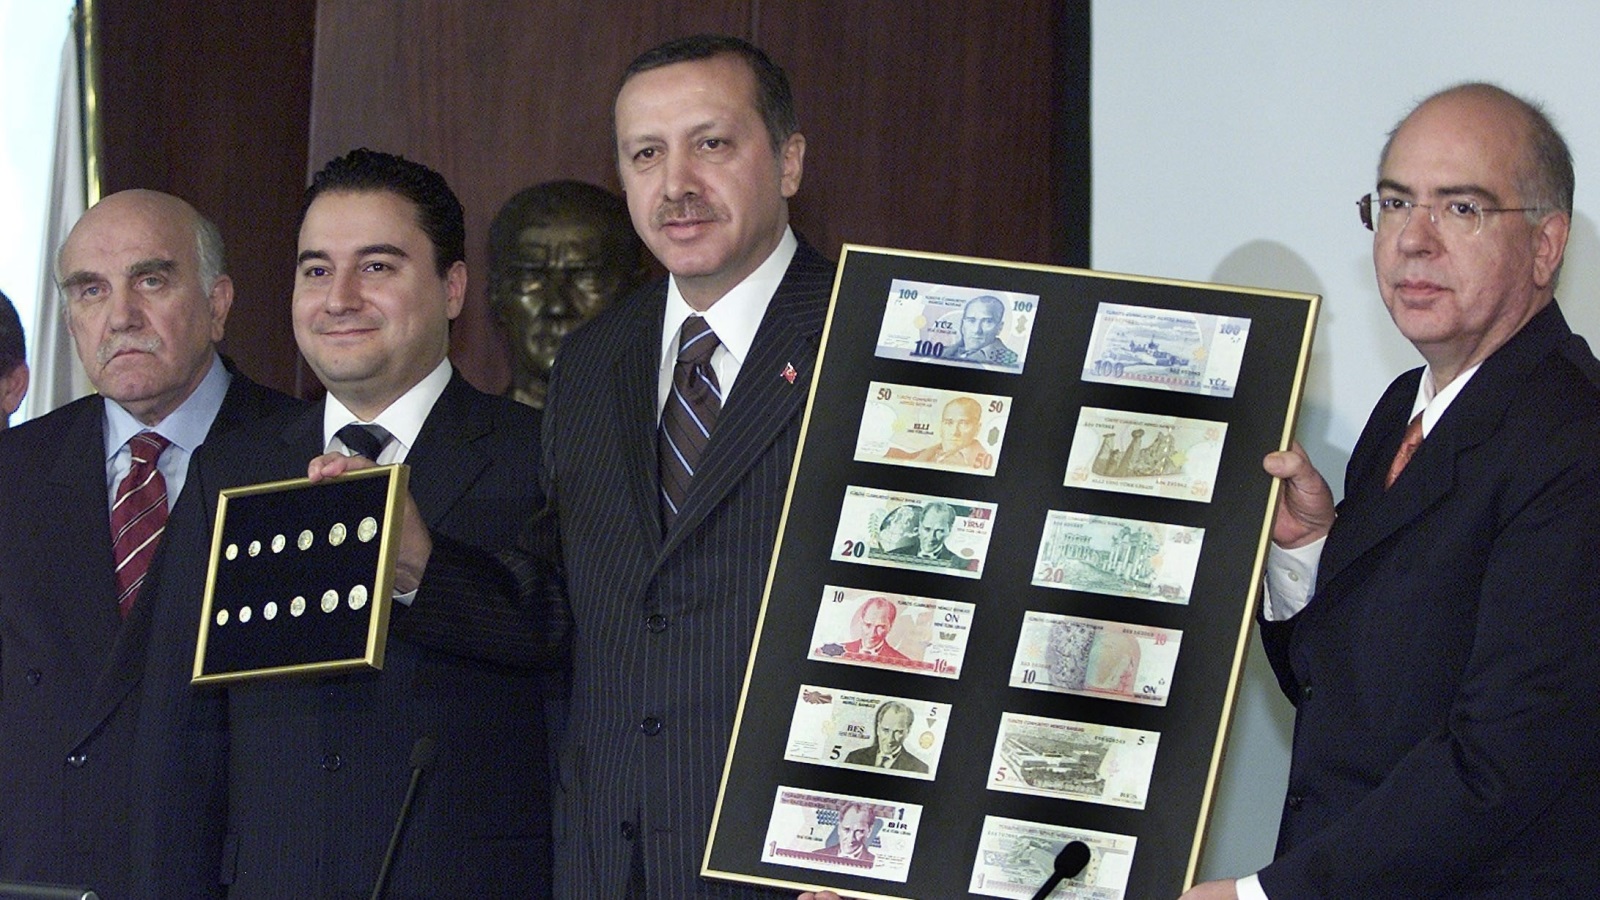 ‪أردوغان وباباجان يعلنان إصدار الليرة التركية الجديدة في أكتوبر/تشرين الأول 2004‬ أردوغان وباباجان يعلنان إصدار الليرة التركية الجديدة في أكتوبر/تشرين الأول 2004  (الأوروبية)